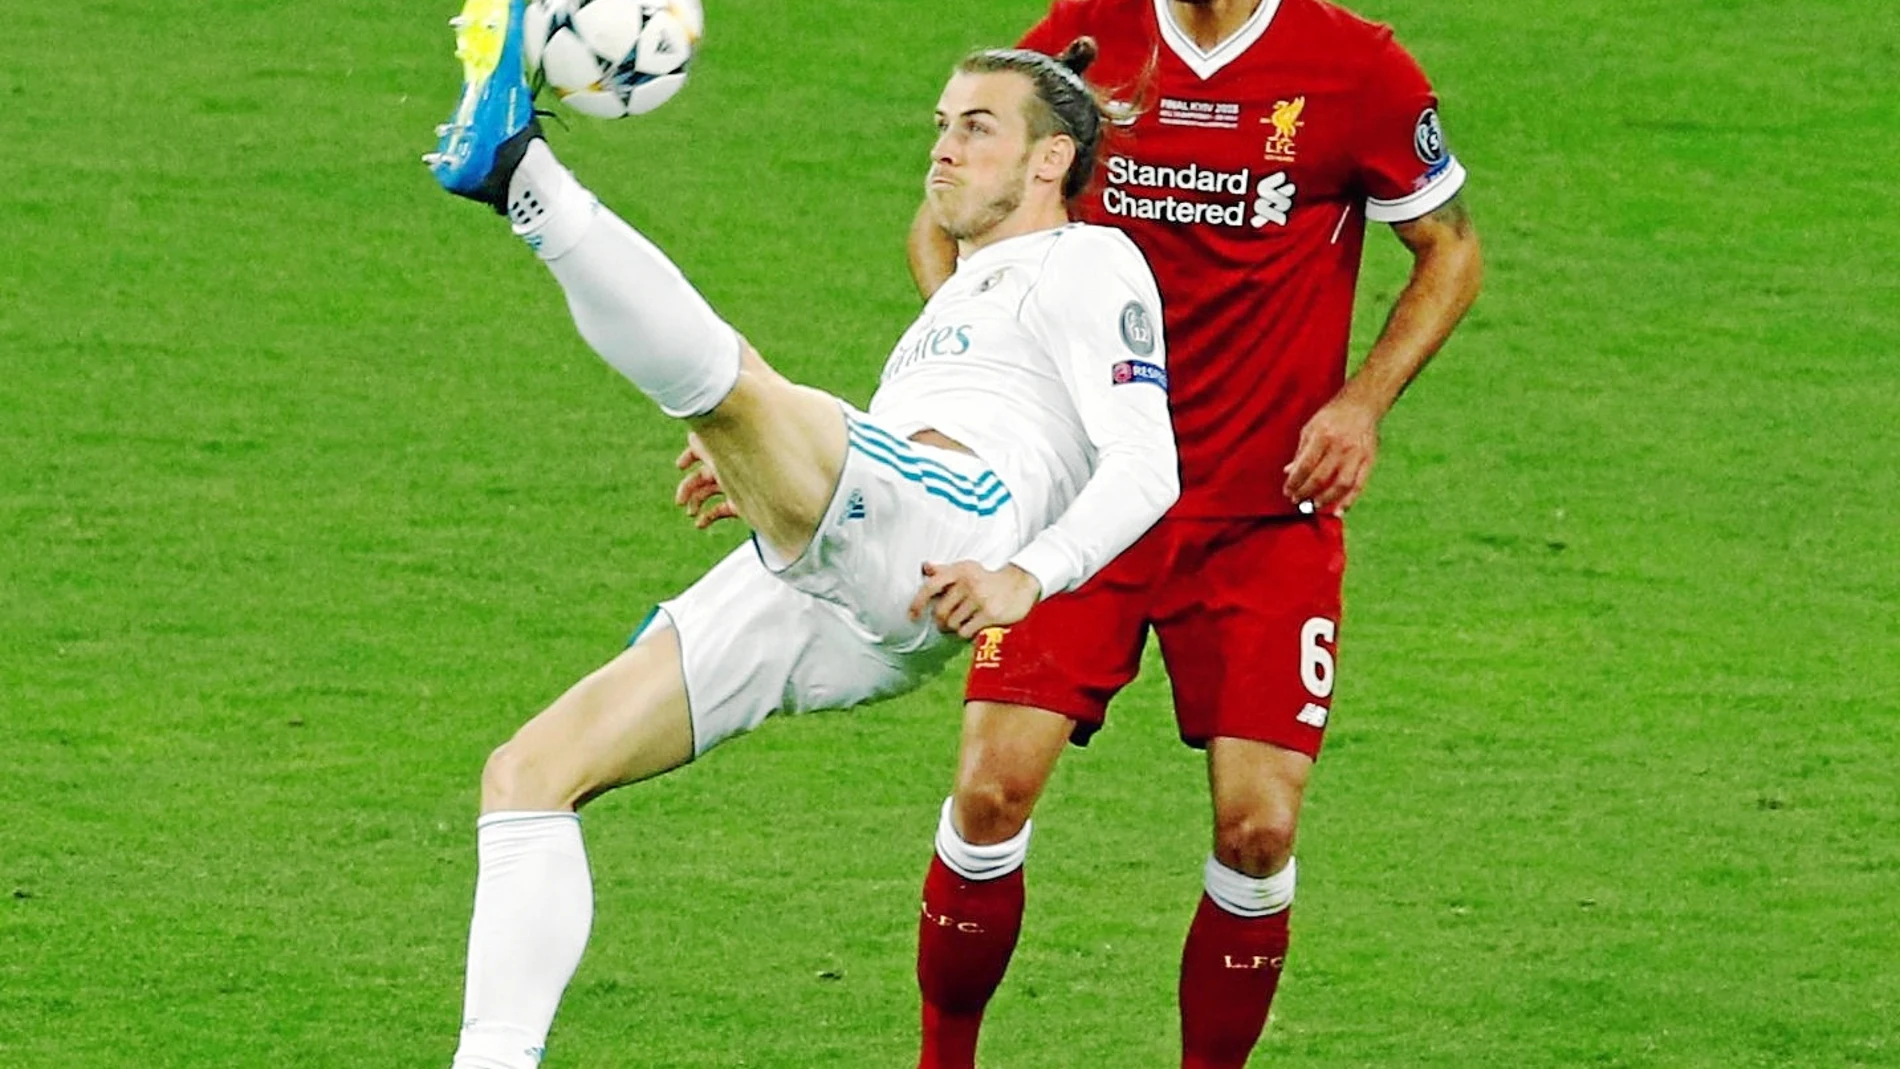 Empezó como suplente ante el Liverpool, entró en el minuto 61 y tres después marcó un golazo de chilena. También anotó el 3-1 definitivo